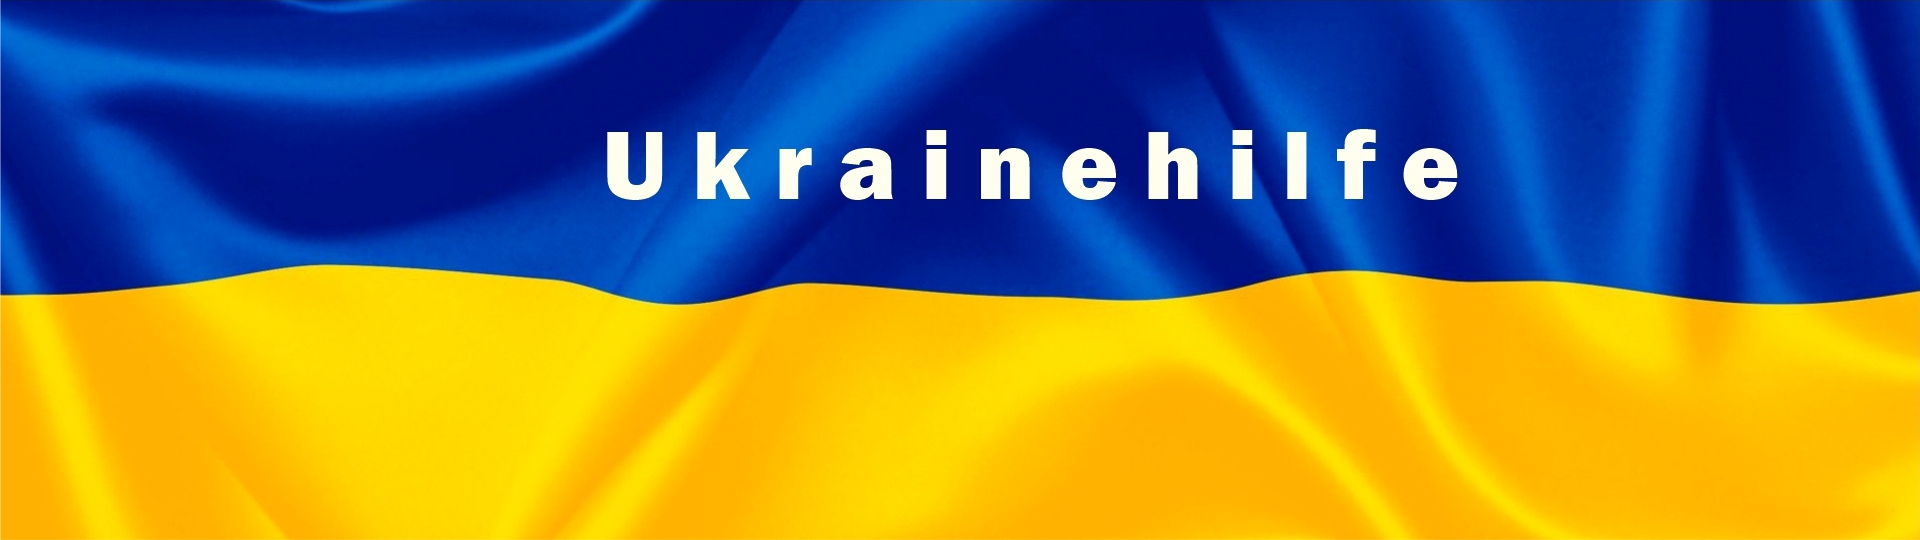 Bühnenbild - Ukrainehilfe